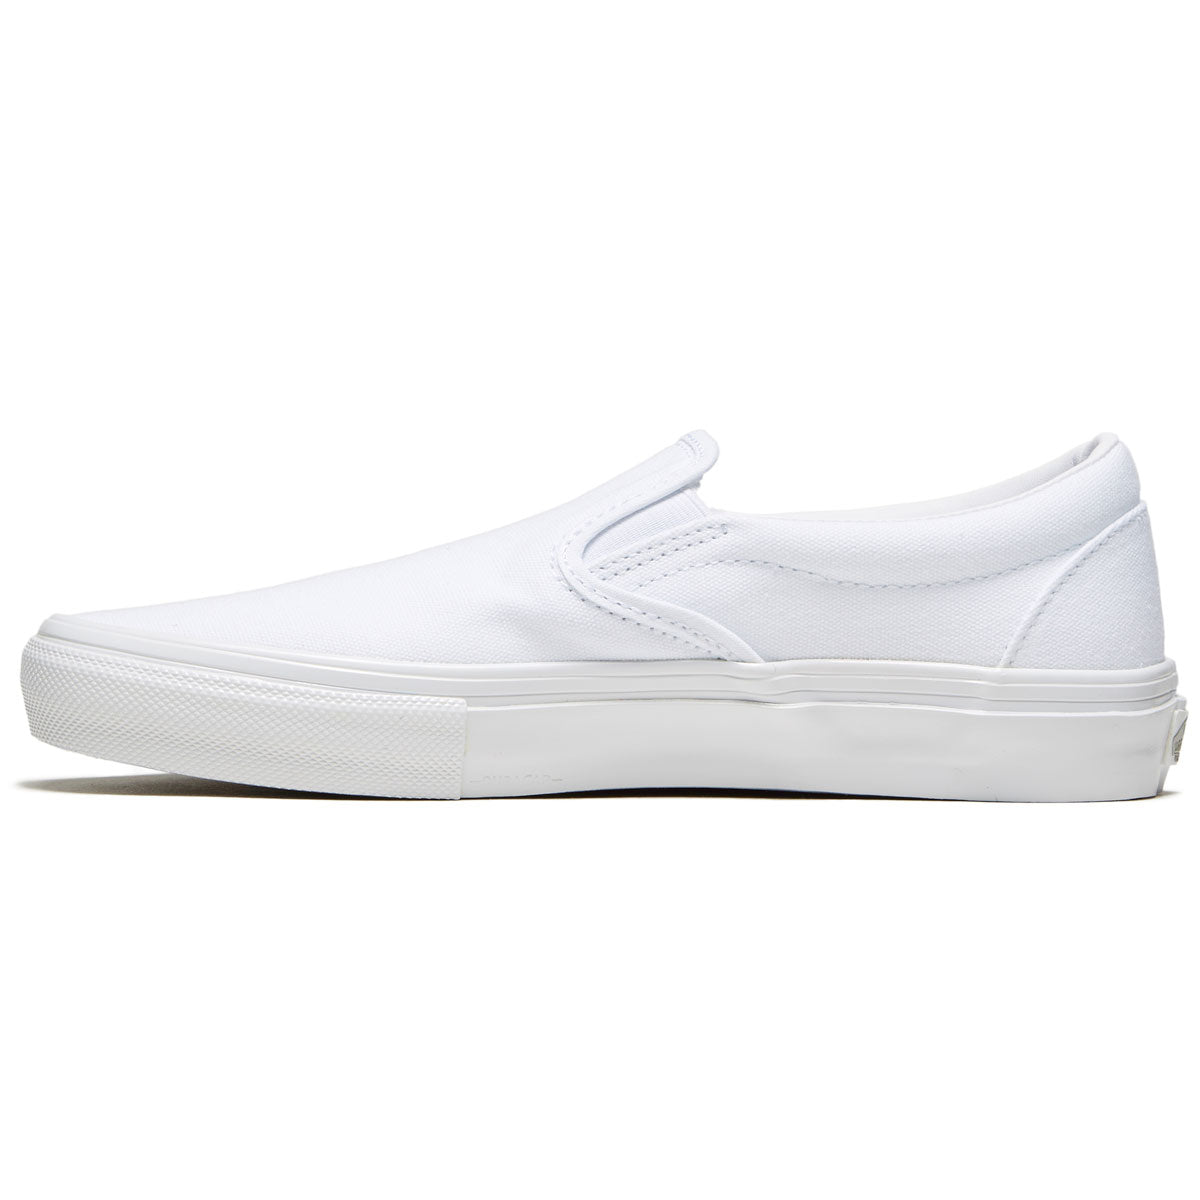 Vans Skate Slip-on Shoes - True White image 2